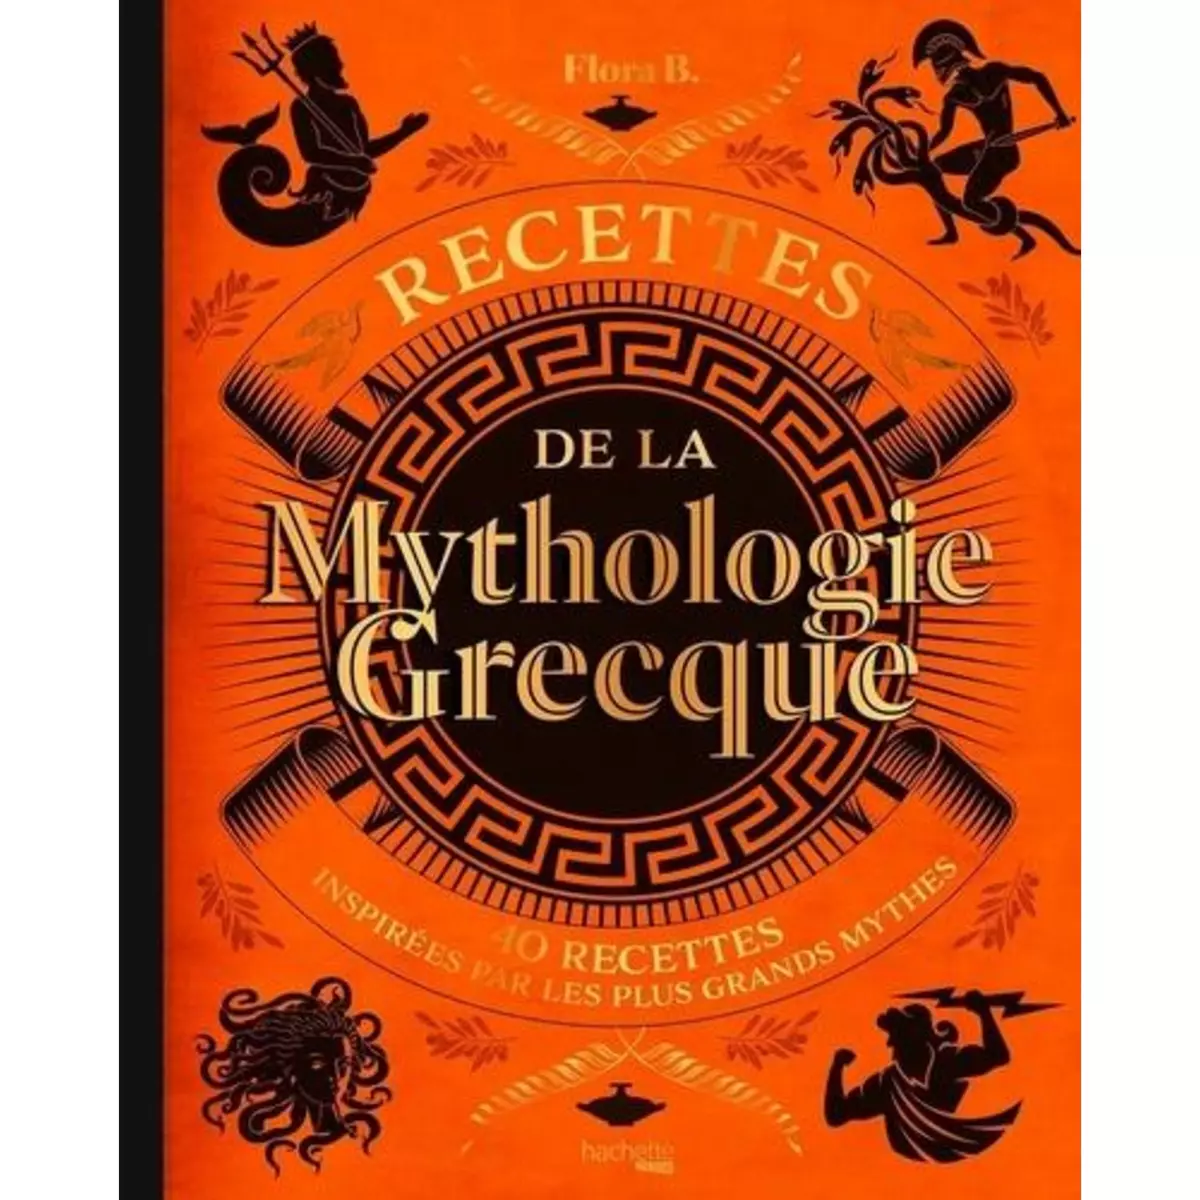  RECETTES DE LA MYTHOLOGIE GRECQUE. 40 RECETTES INSPIREES PAR LES PLUS GRANDS MYTHES, B. Flora